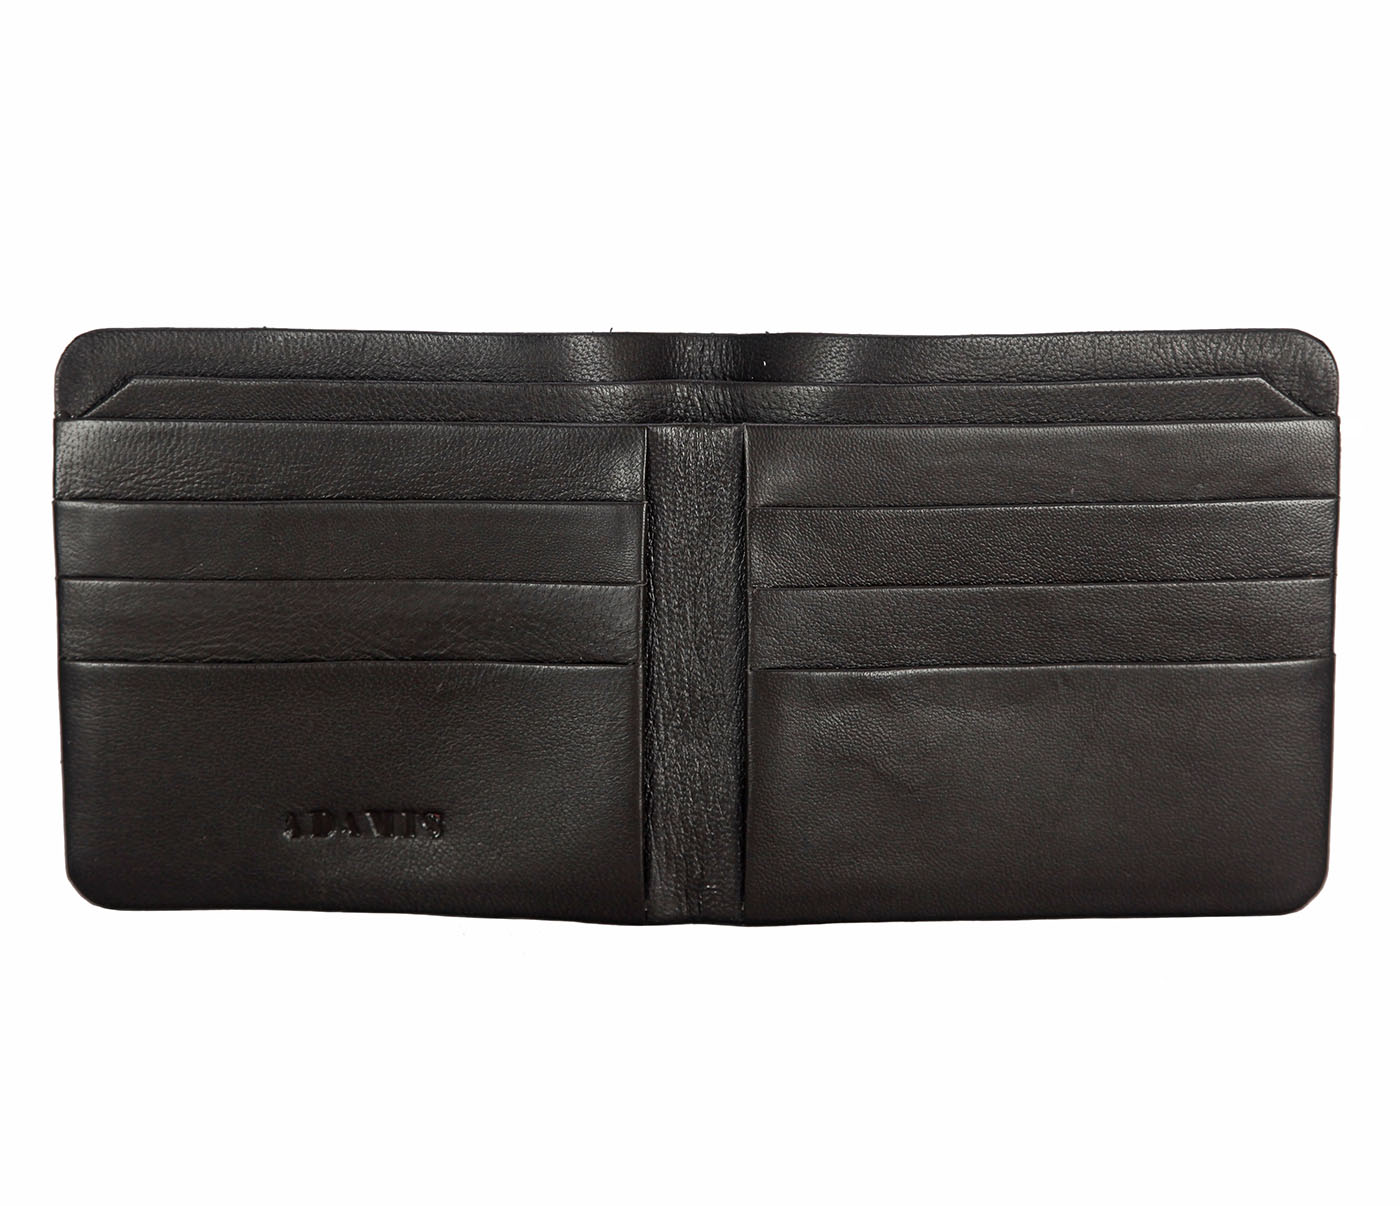 VW18-Diego-Men's bifold sleek wallet in Genuine Leather - Brown